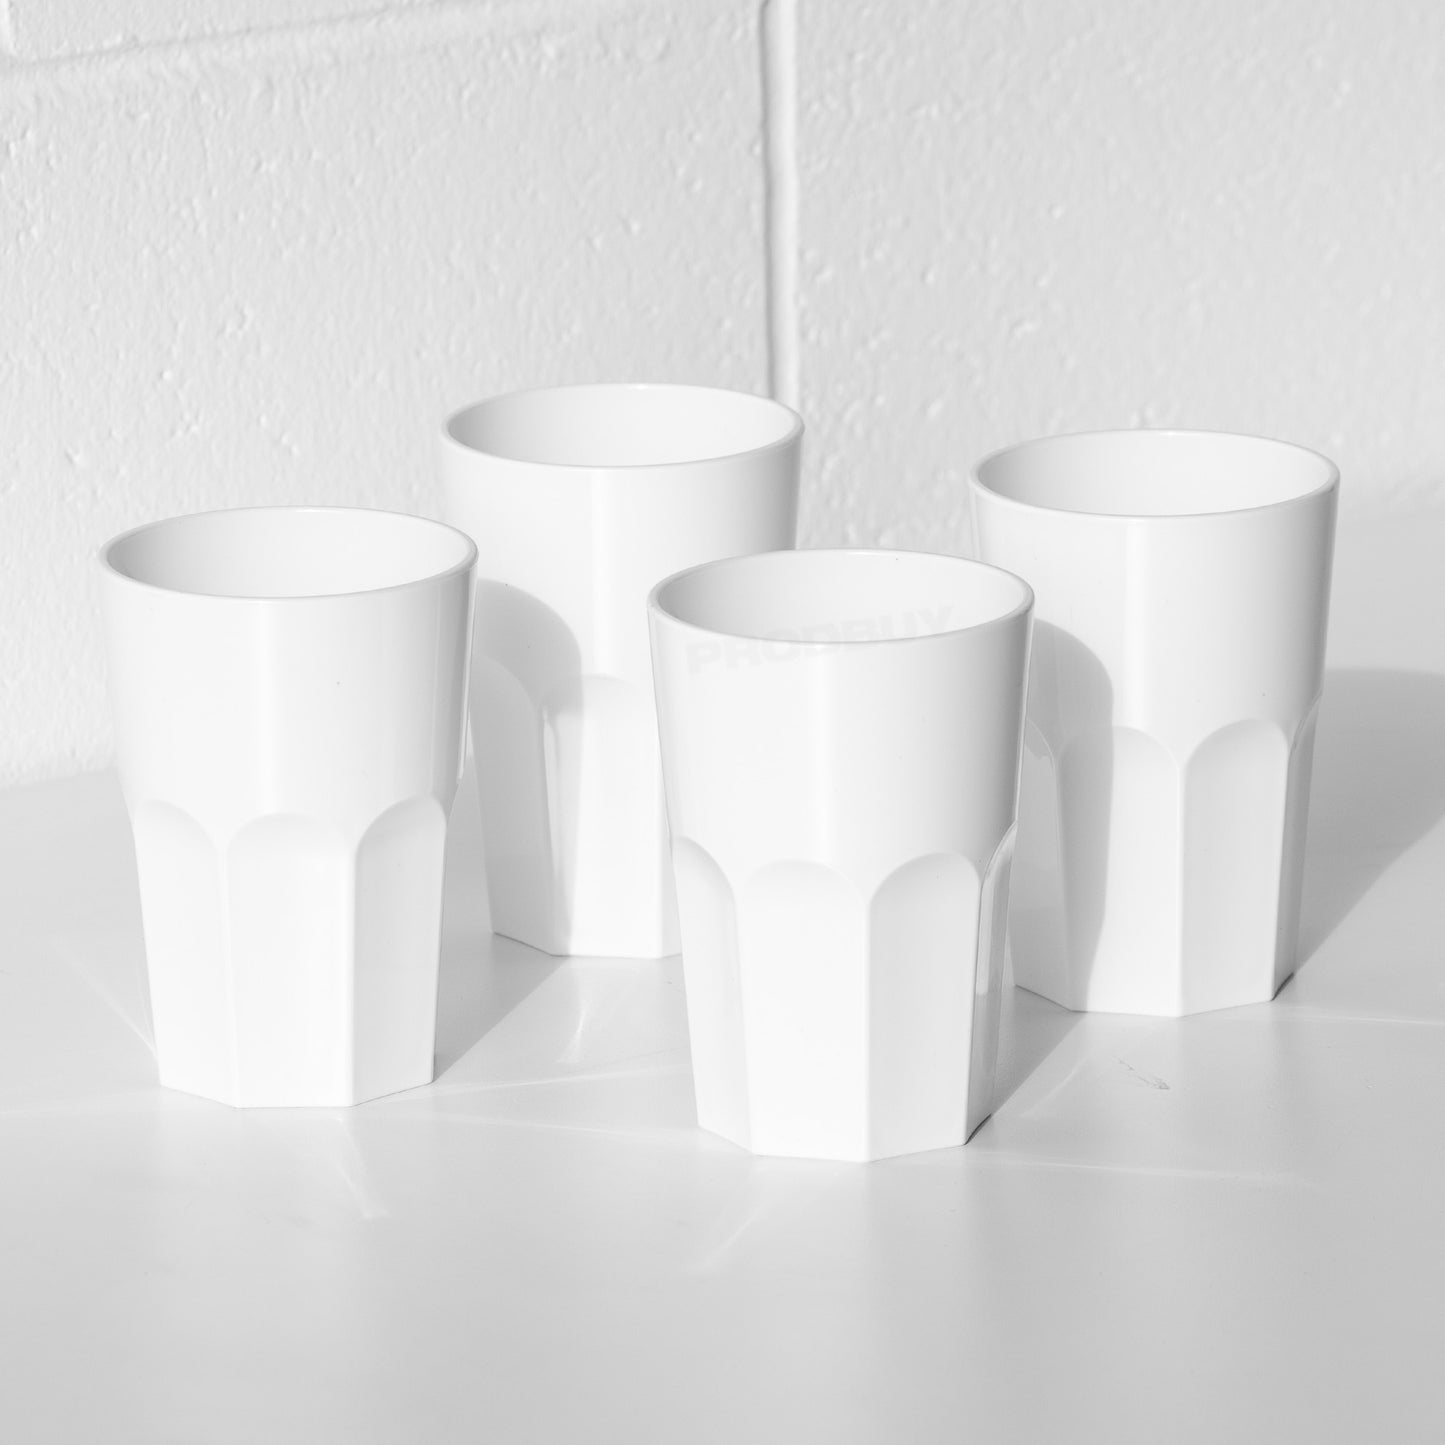 Set of 4 White Reusable Plastic Drinking Glasses